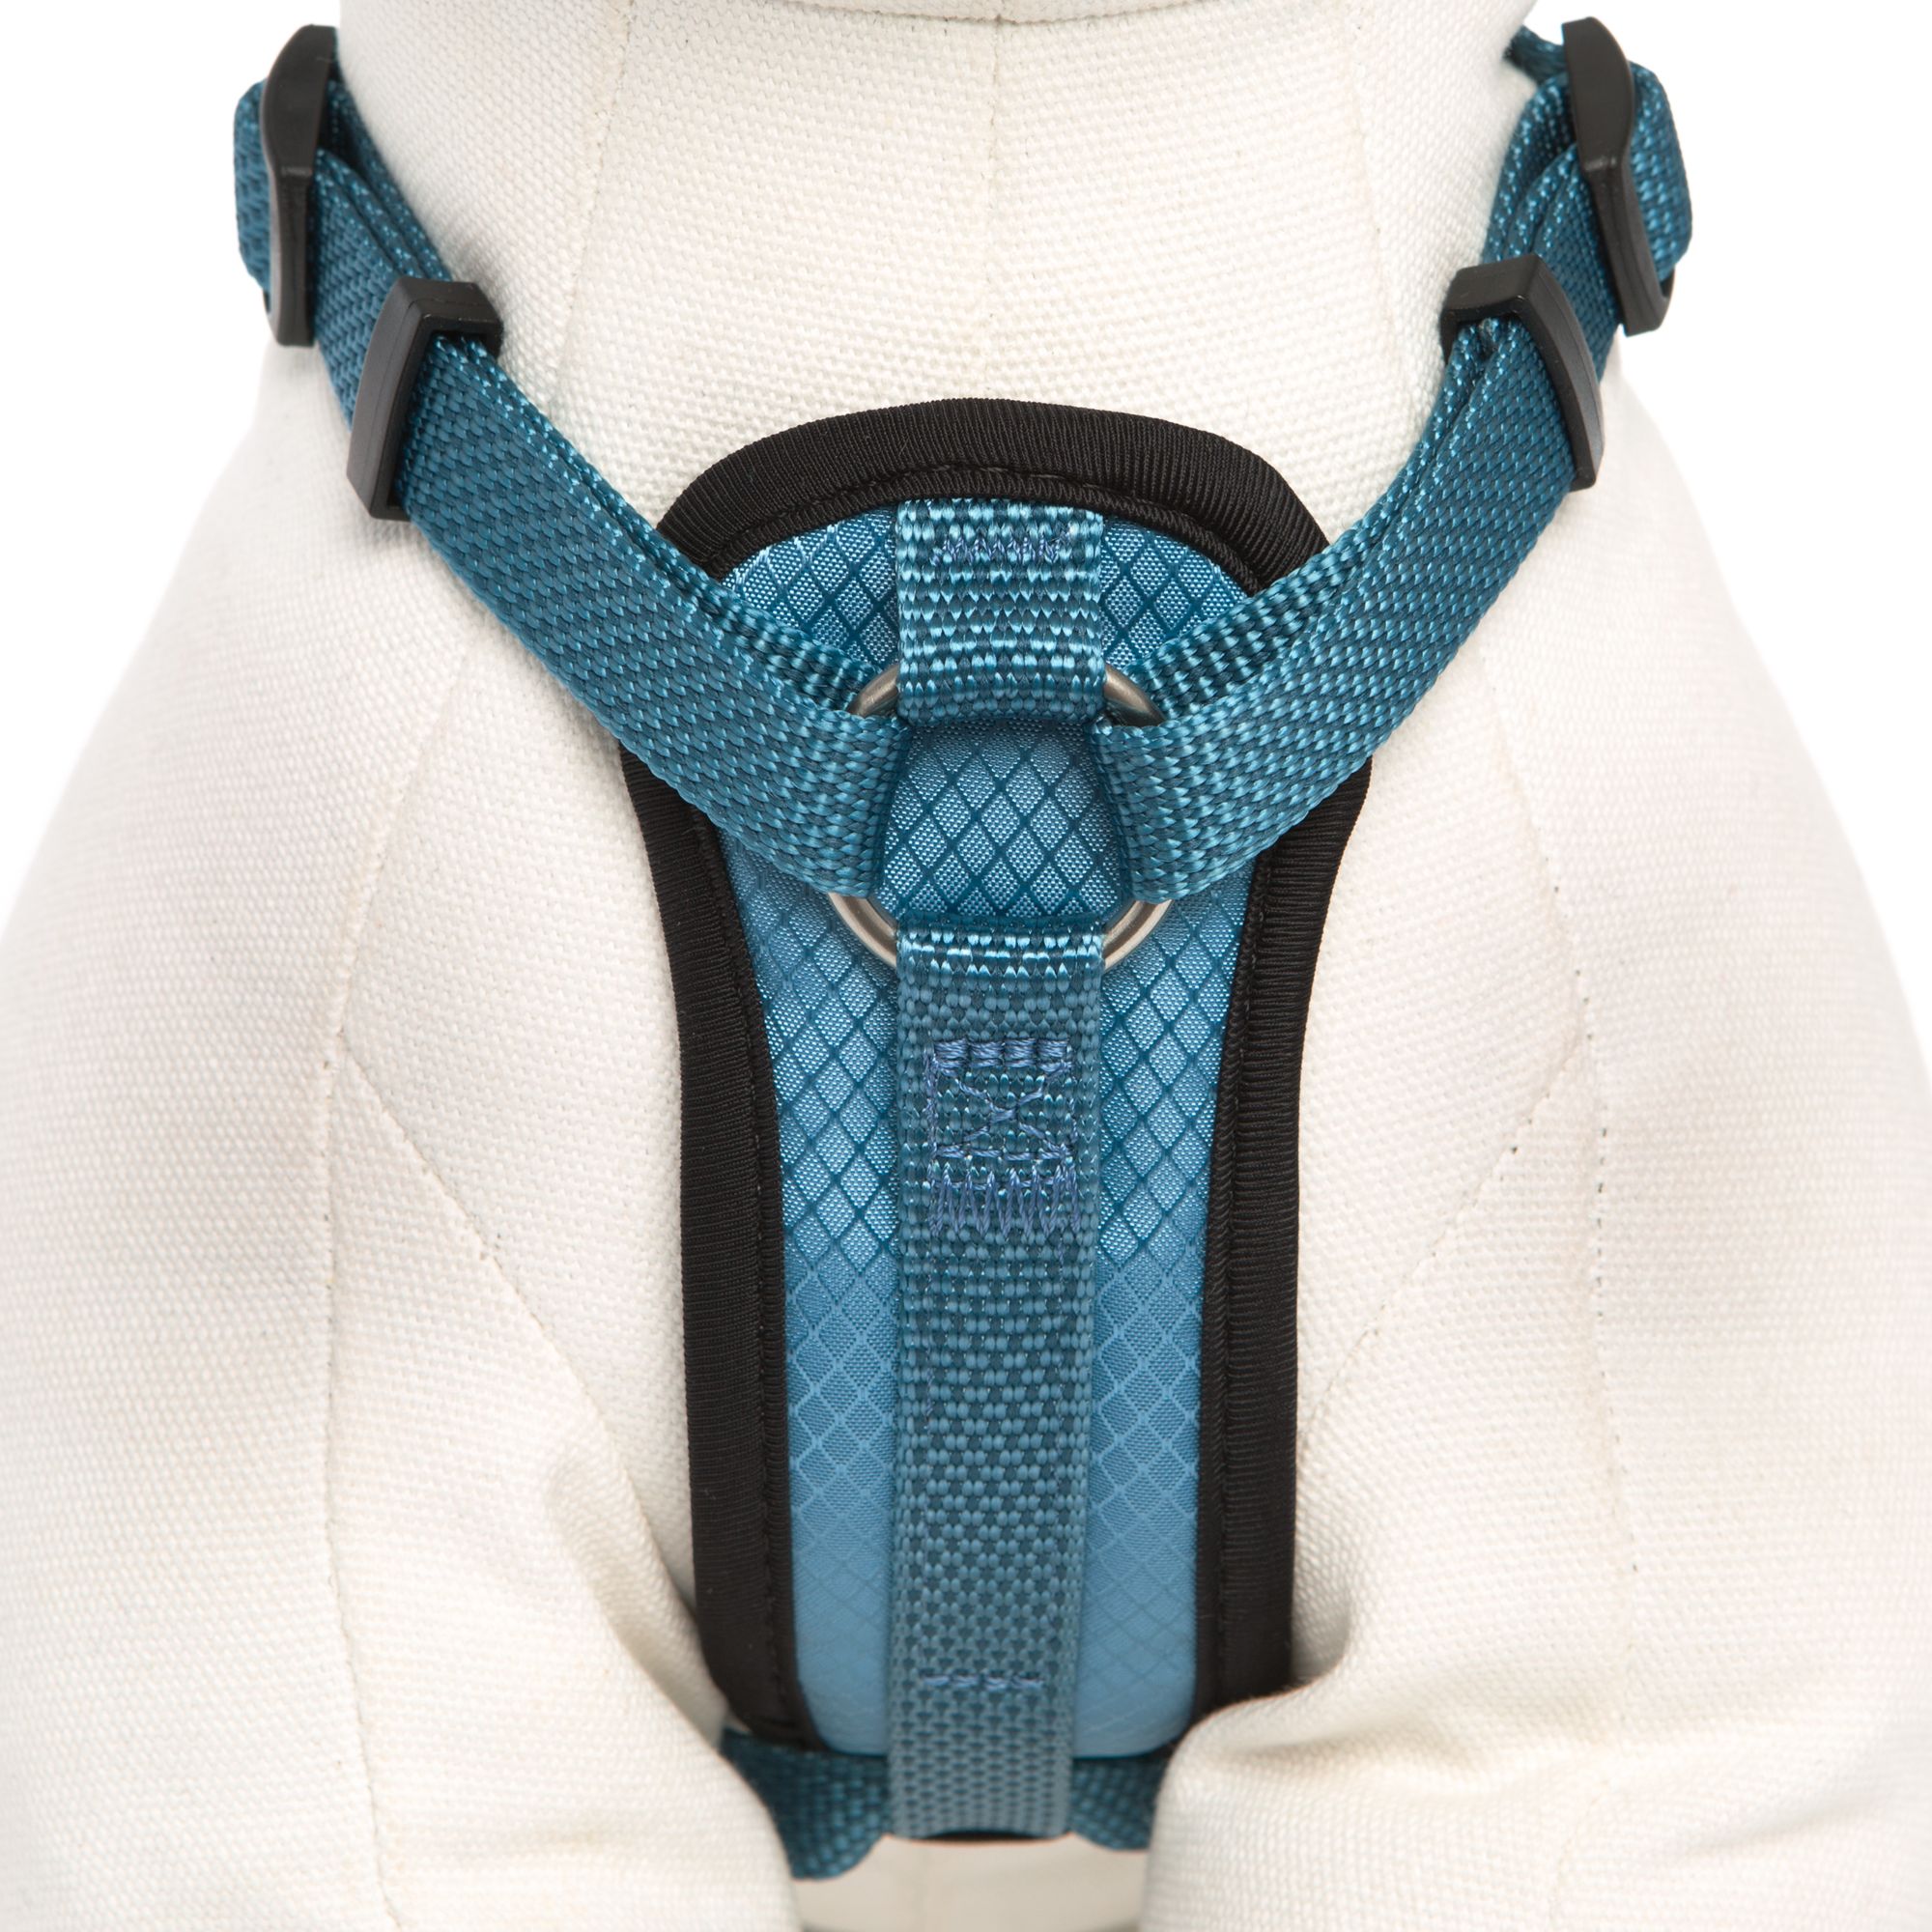 kong comfort padded harness